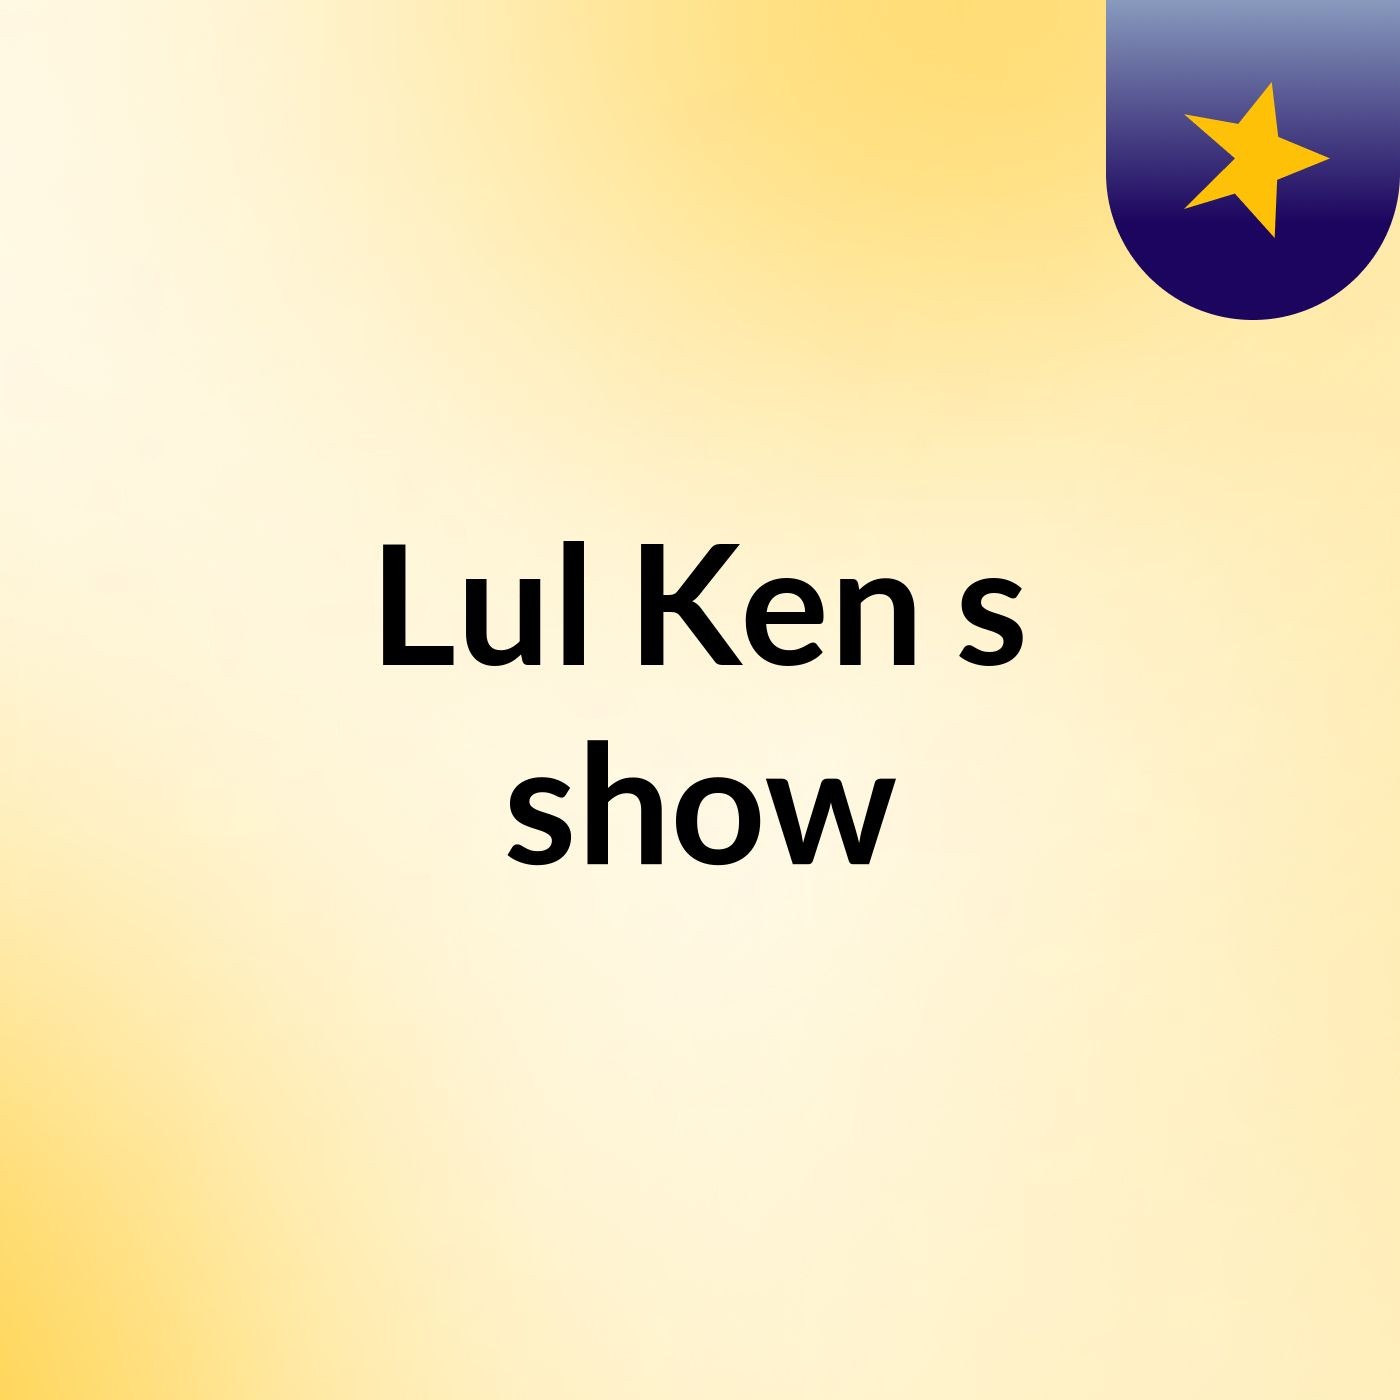 Episode 3 - Lul Ken's show